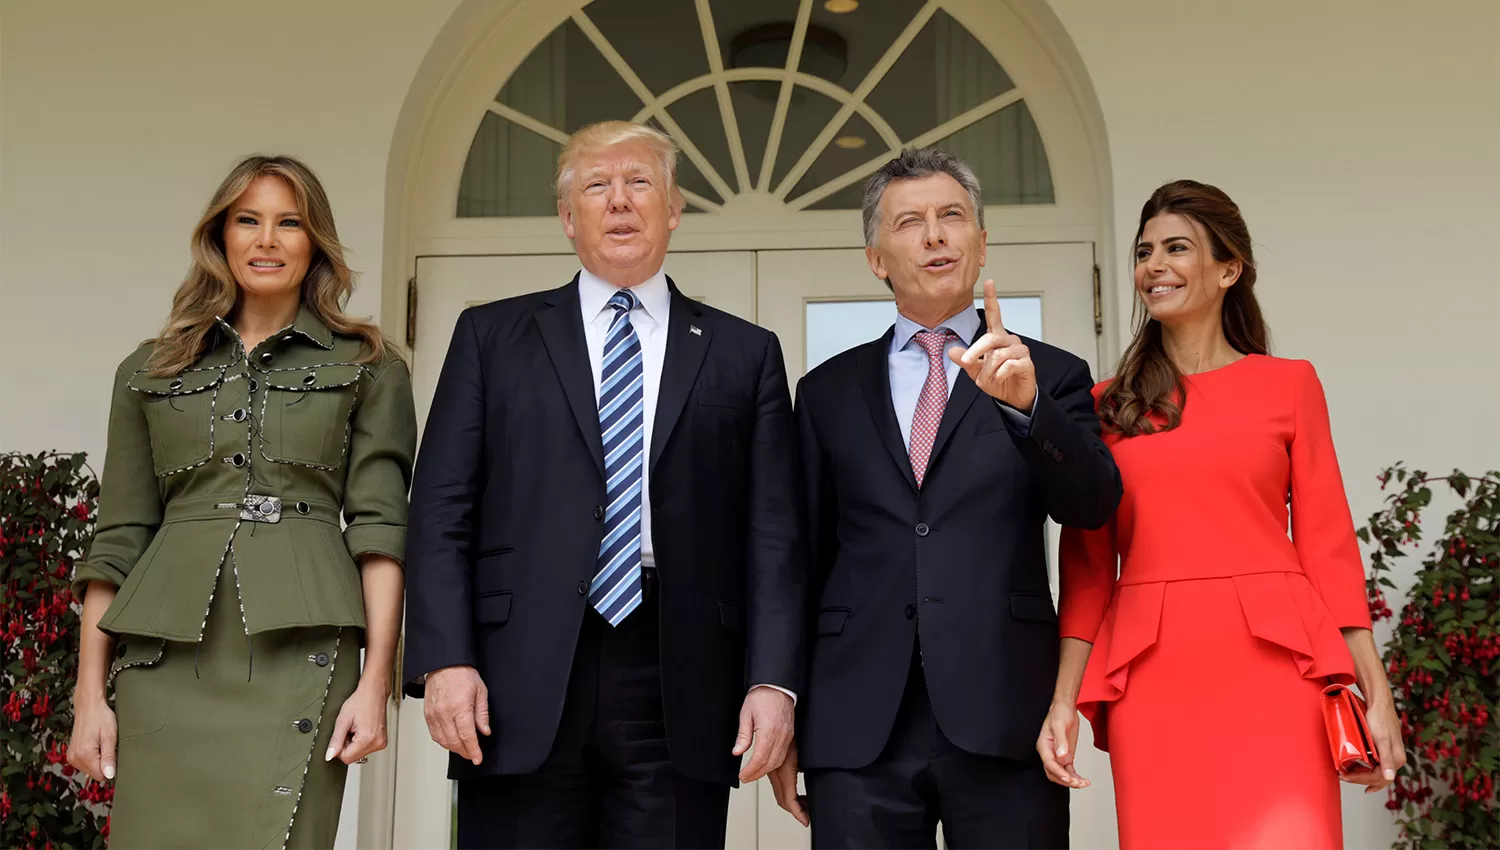 VISITA AL PAÍS. Se espera a Trump en Argentina para el evento en Costa Salguero, que se realizará entre el 30 de noviembre y el 1 de diciembre.
